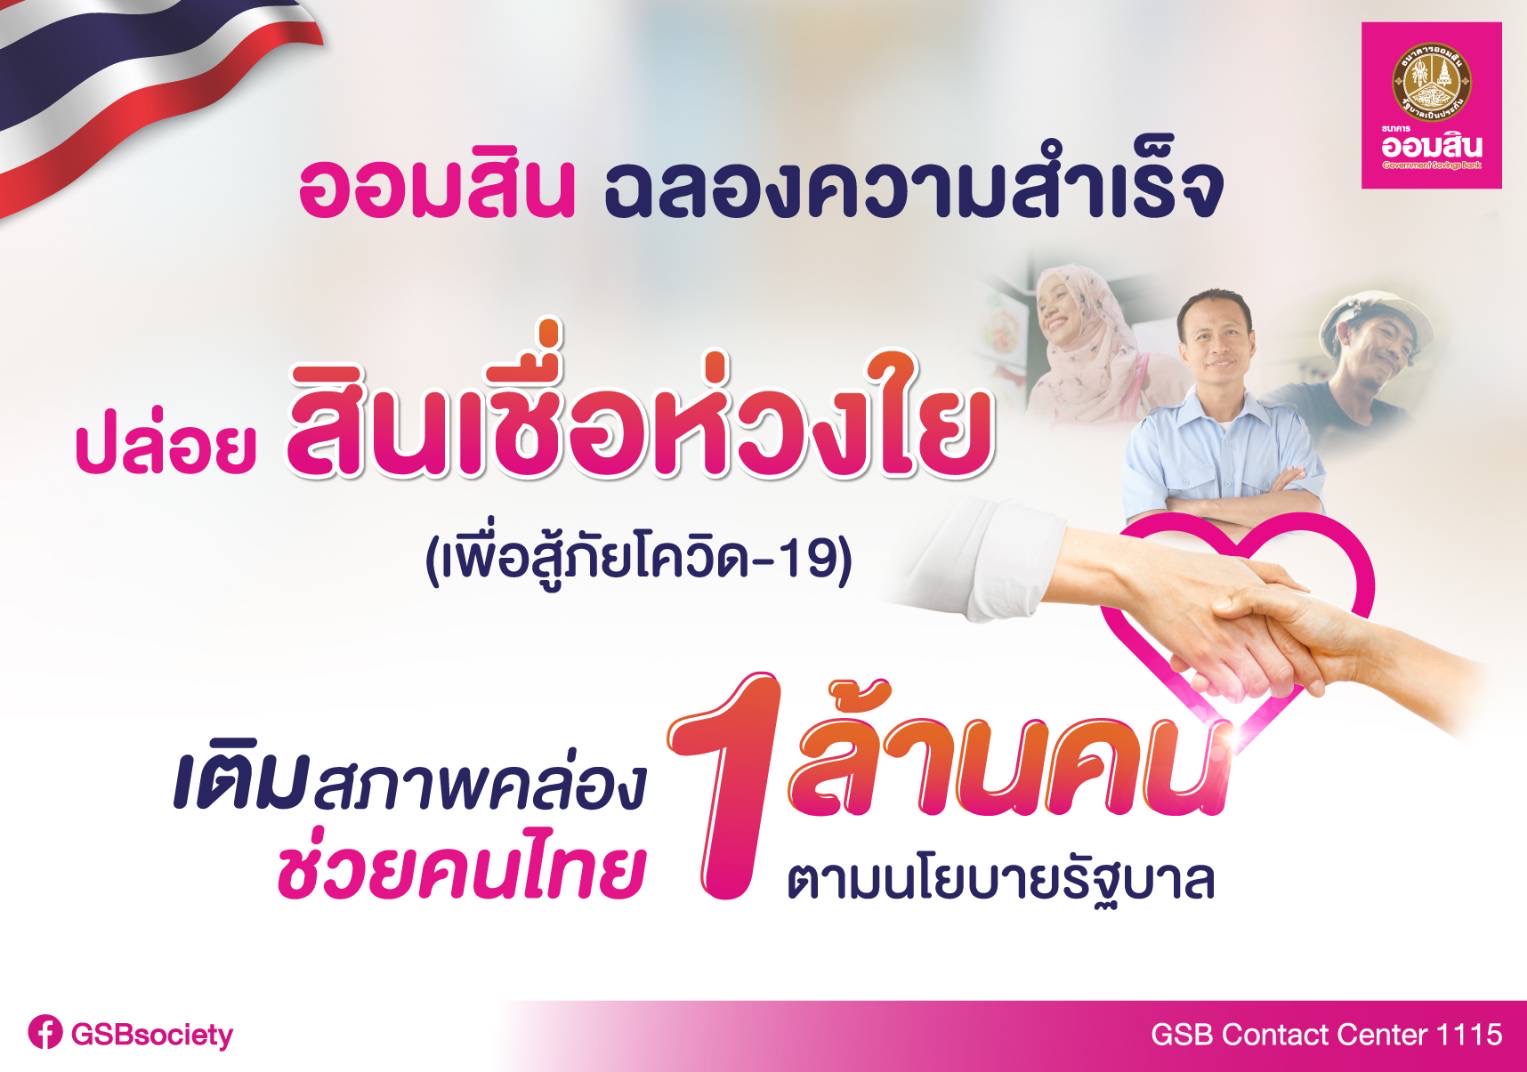 ออมสิน ปลื้มปล่อยสินเชื่อห่วงใยเพื่อสู้ภัยโควิด-19  ช่วยคนไทย 1 ล้านคน